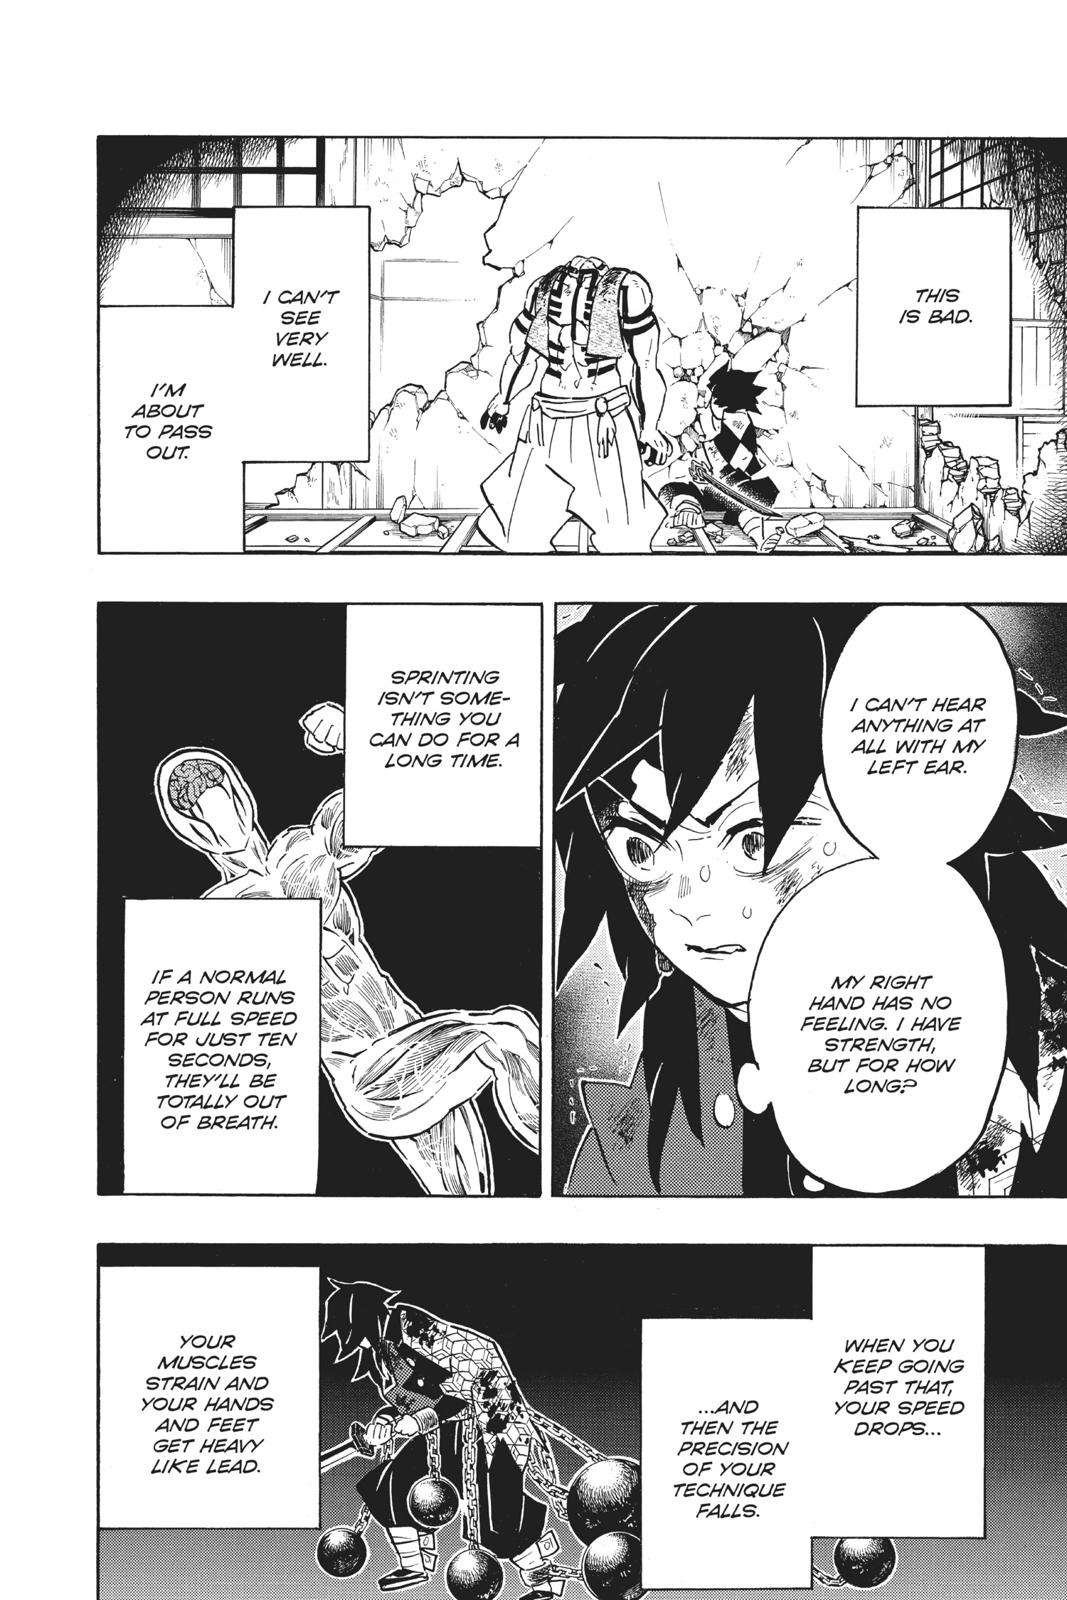 Demon Slayer Manga Manga Chapter - 154 - image 2